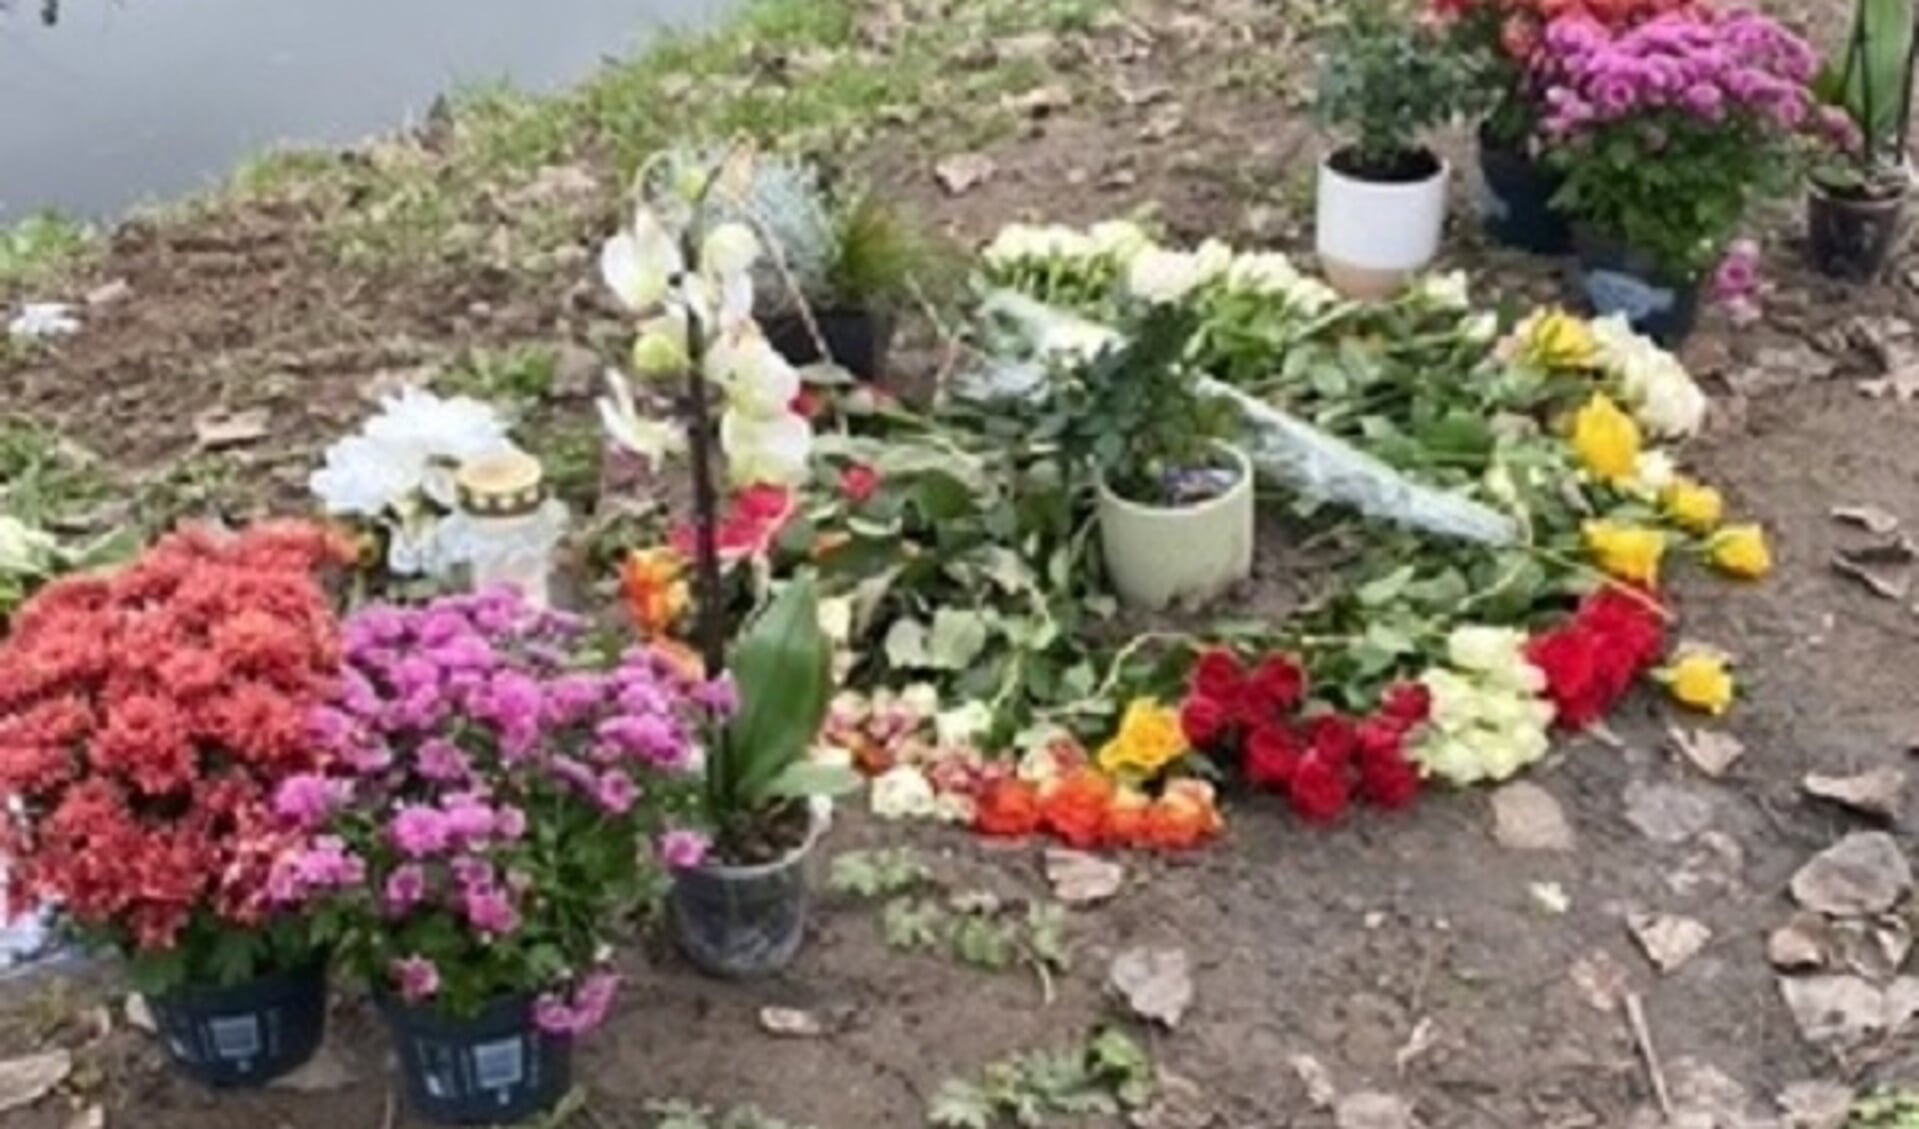 Op de plek van het ongeval zijn bloemen gelegd.